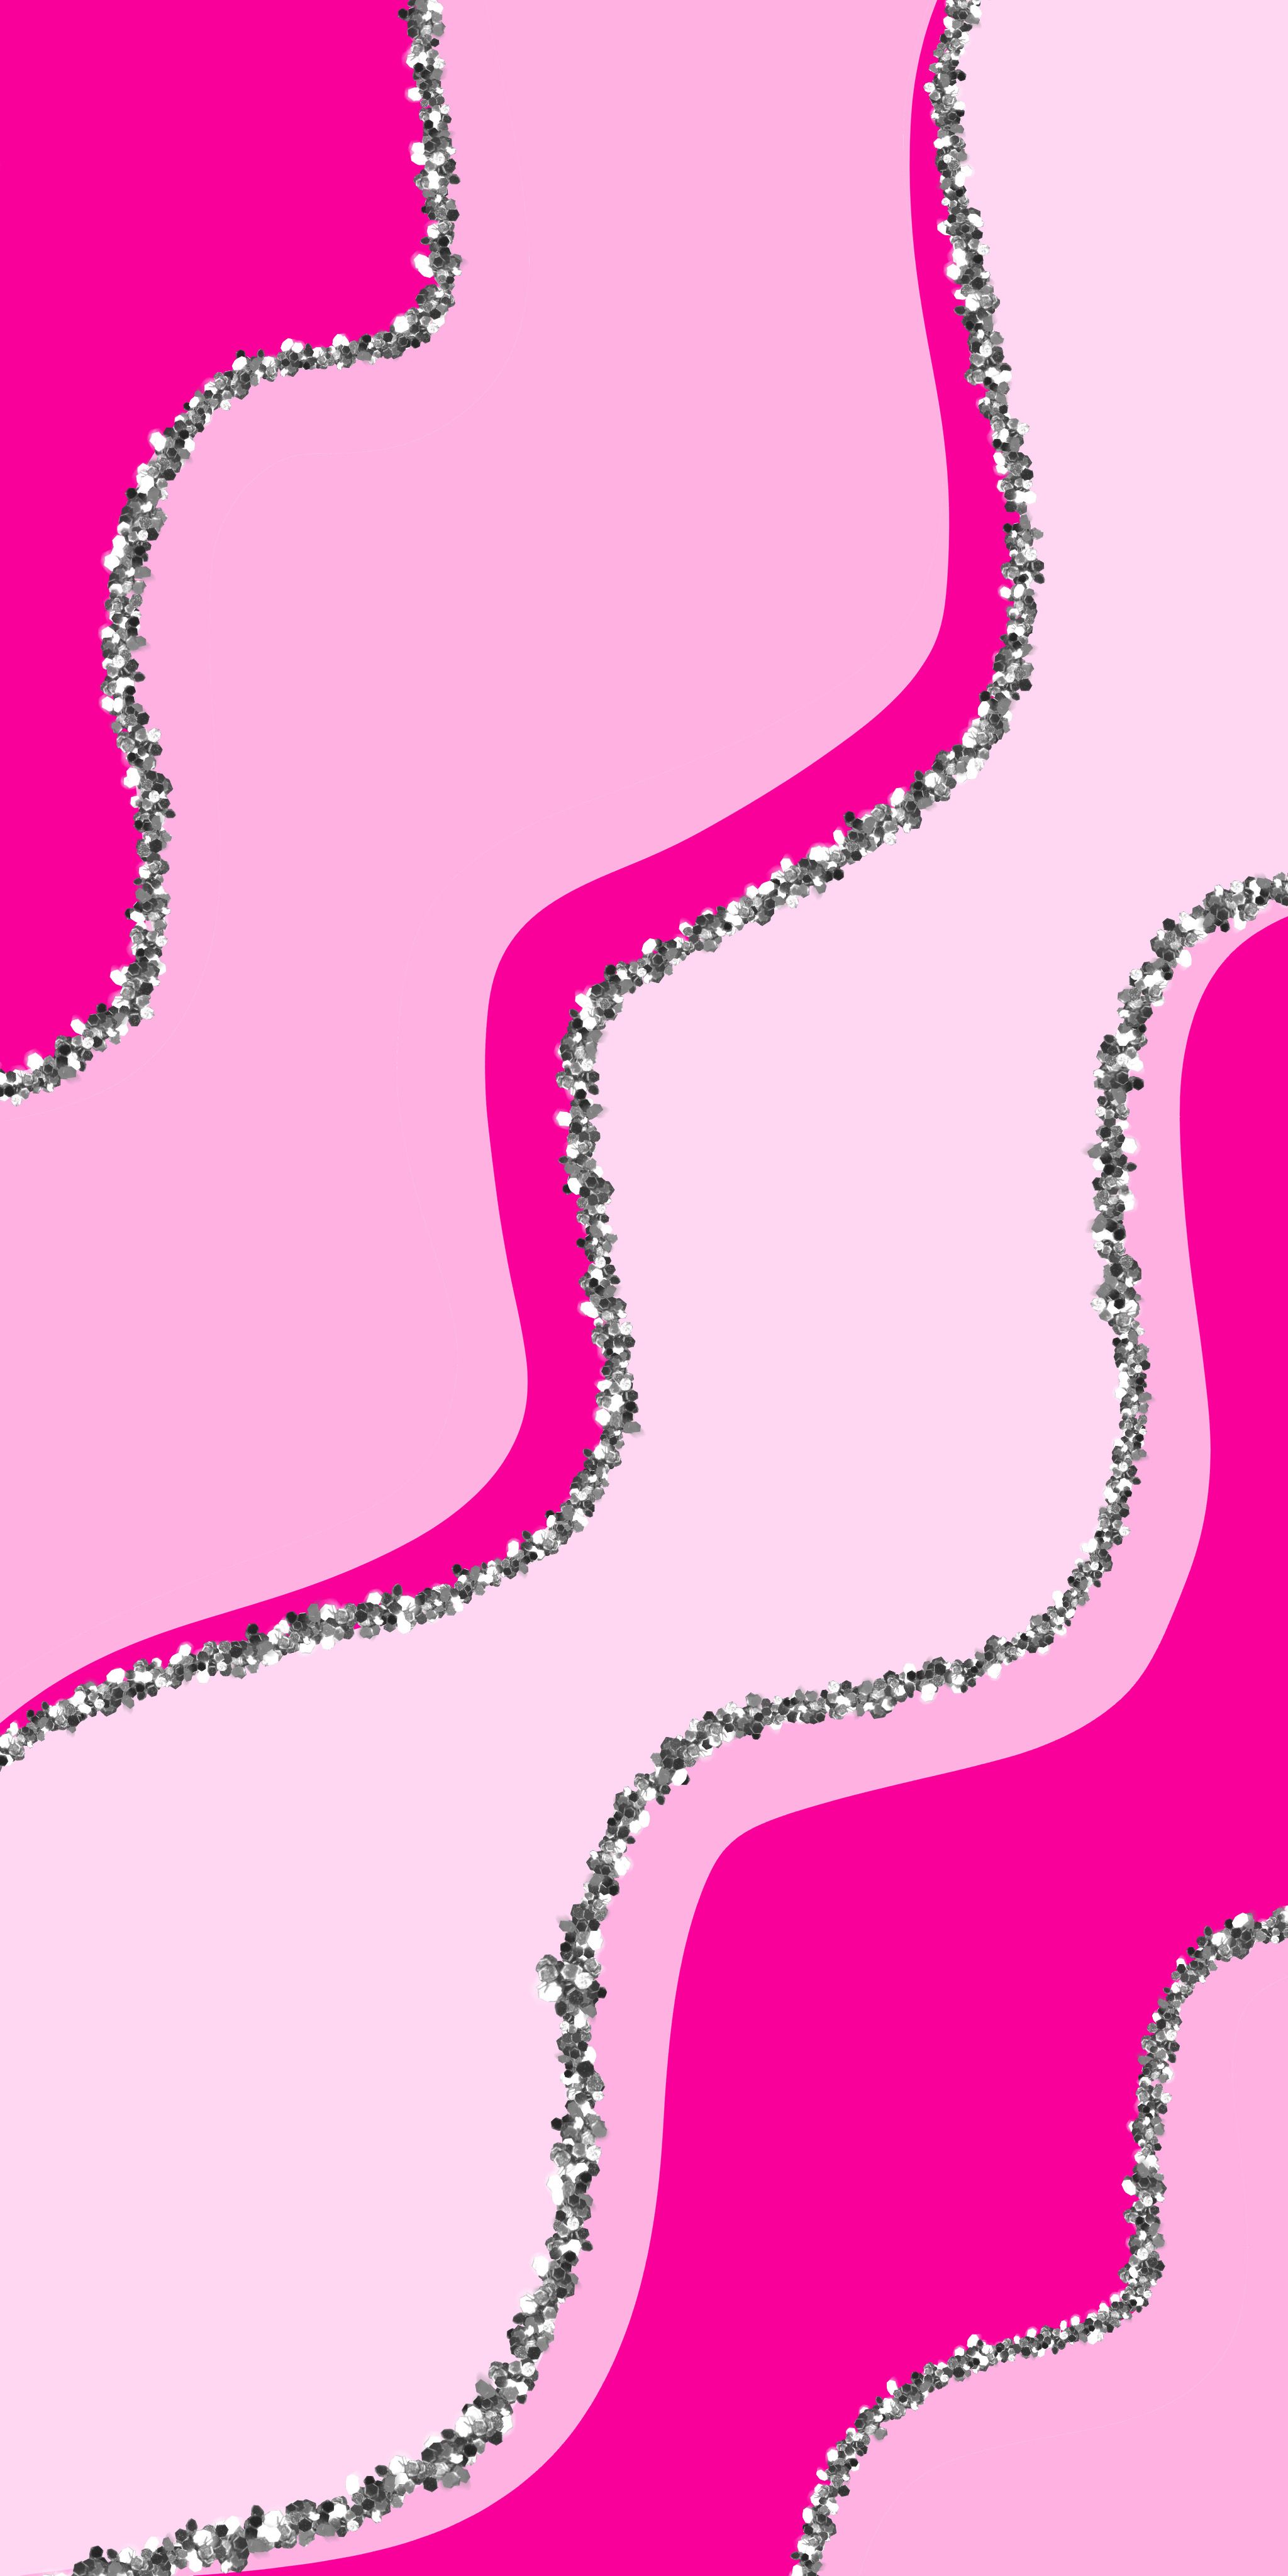 Một bức ảnh hình nền Preppy trong sắc hồng nhẹ nhàng sẽ làm bạn cảm thấy ngọt ngào và thư giãn hơn khi sử dụng máy tính. Hãy cùng chiêm ngưỡng bức ảnh này và tận hưởng không gian làm việc tha hồ trong sắc hồng Preppy.